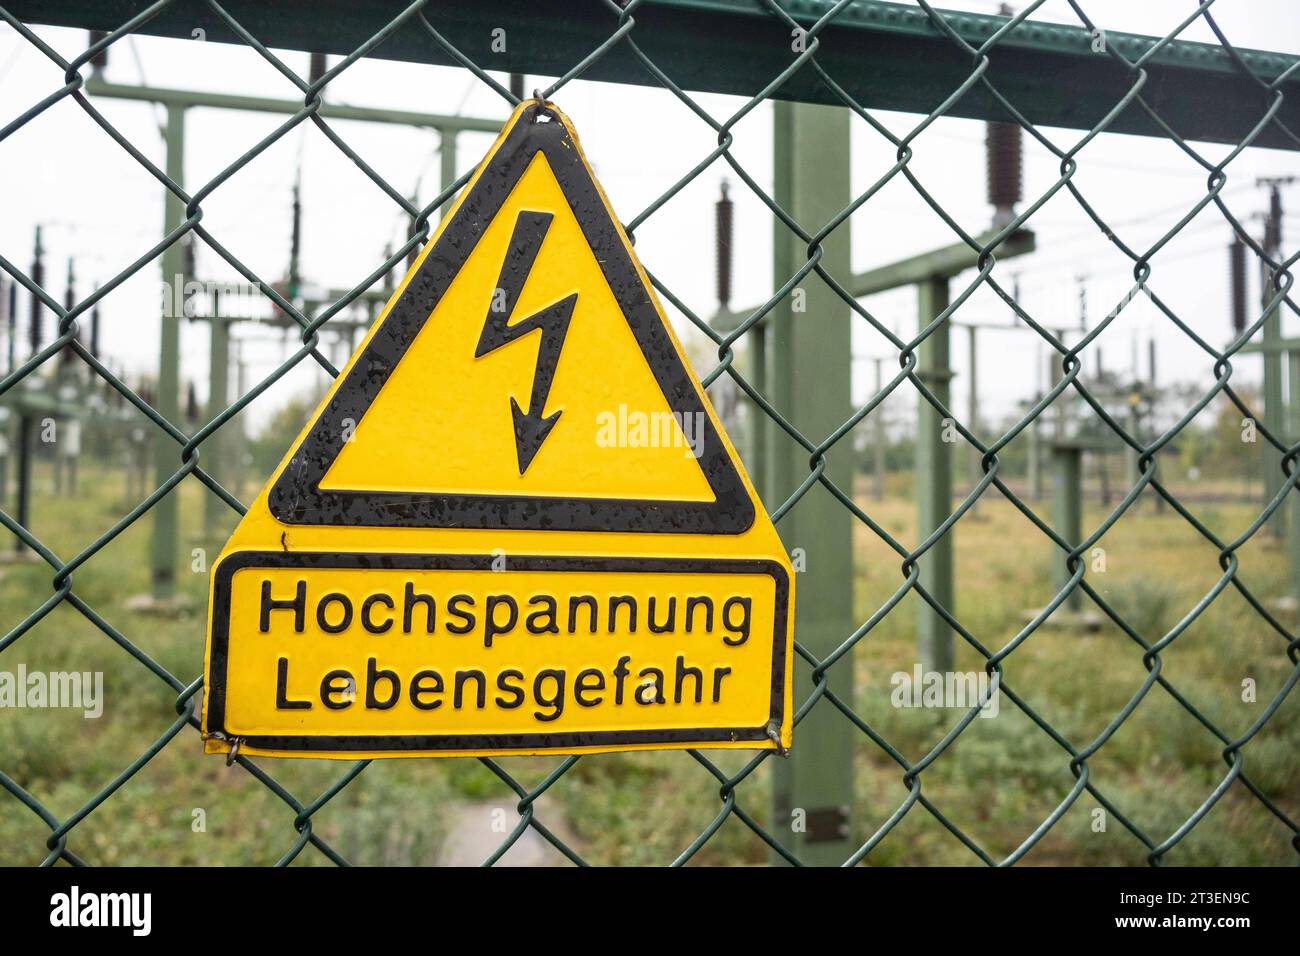 Symbolbild : Hochspannung Lebensgefahr. *** Image symbole haute tension danger pour la vie crédit : Imago/Alamy Live News Banque D'Images